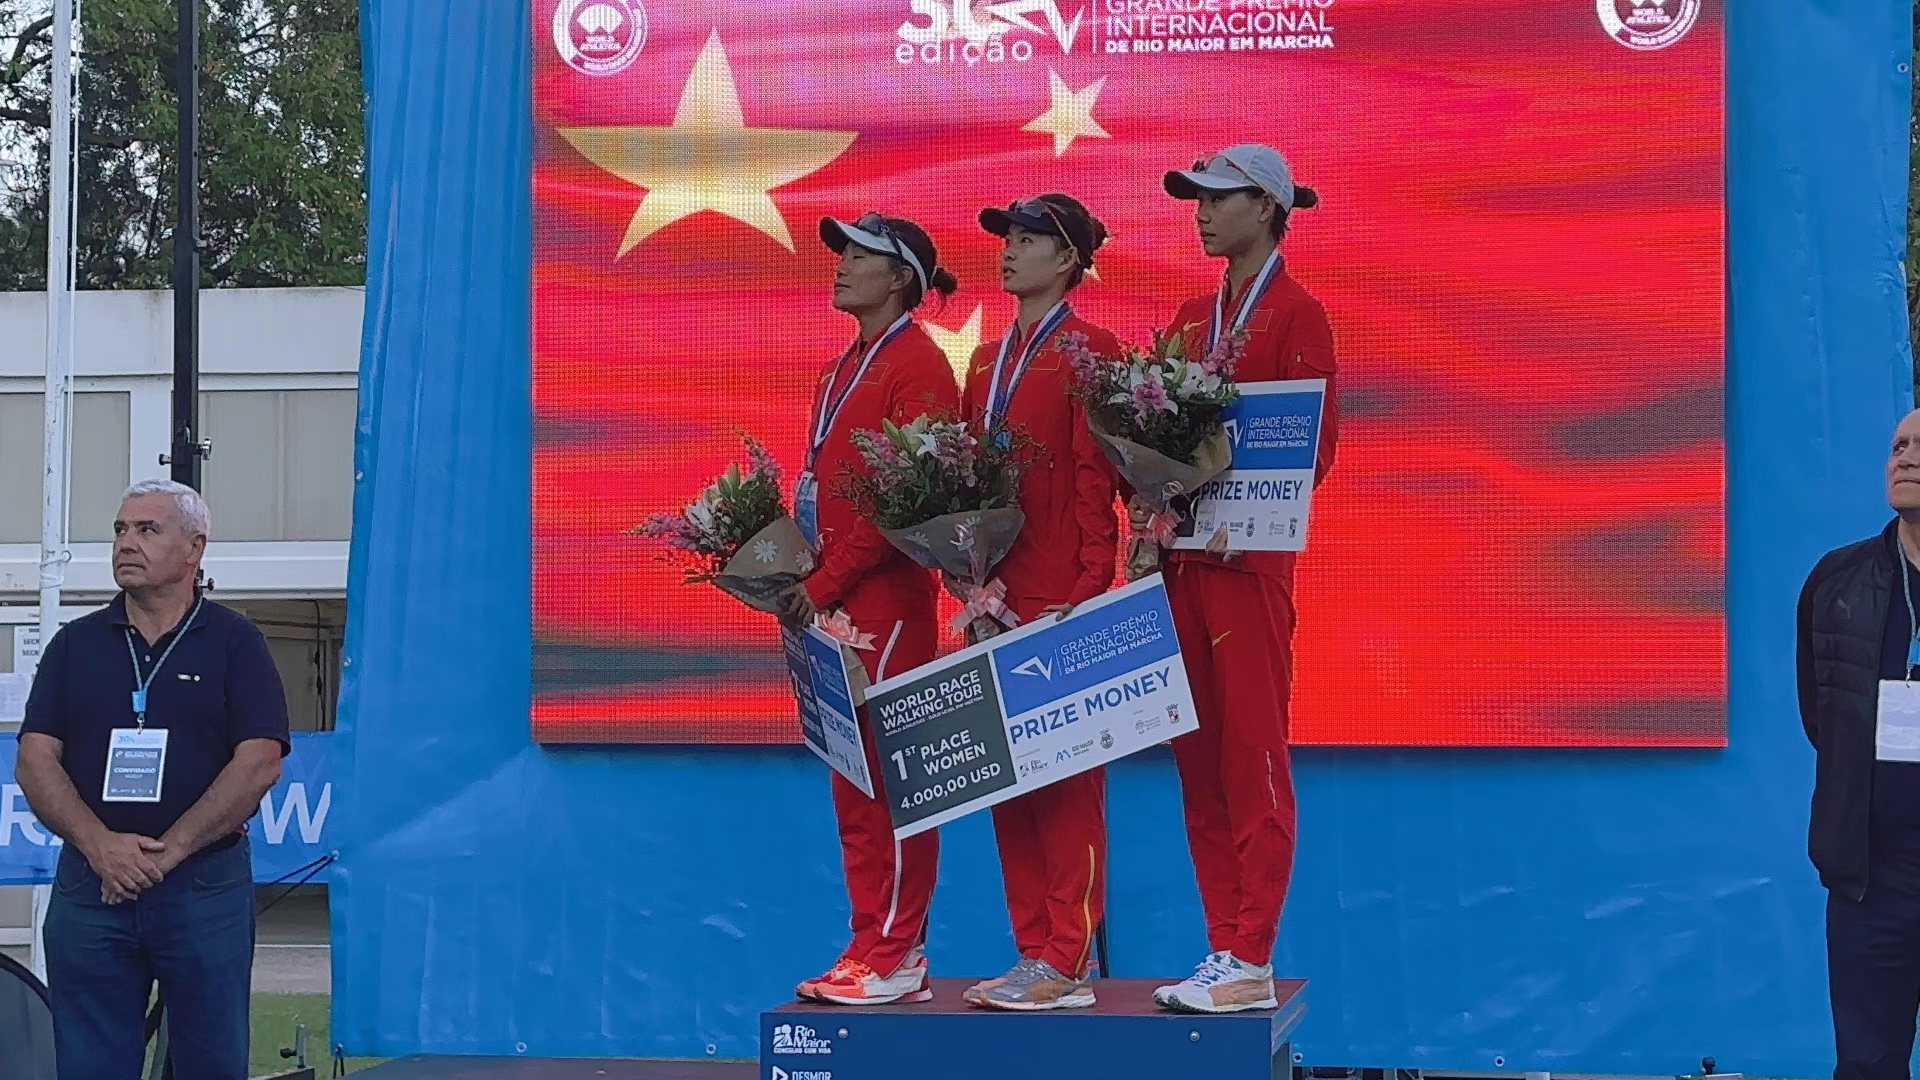 中国竞走世界冠军图片